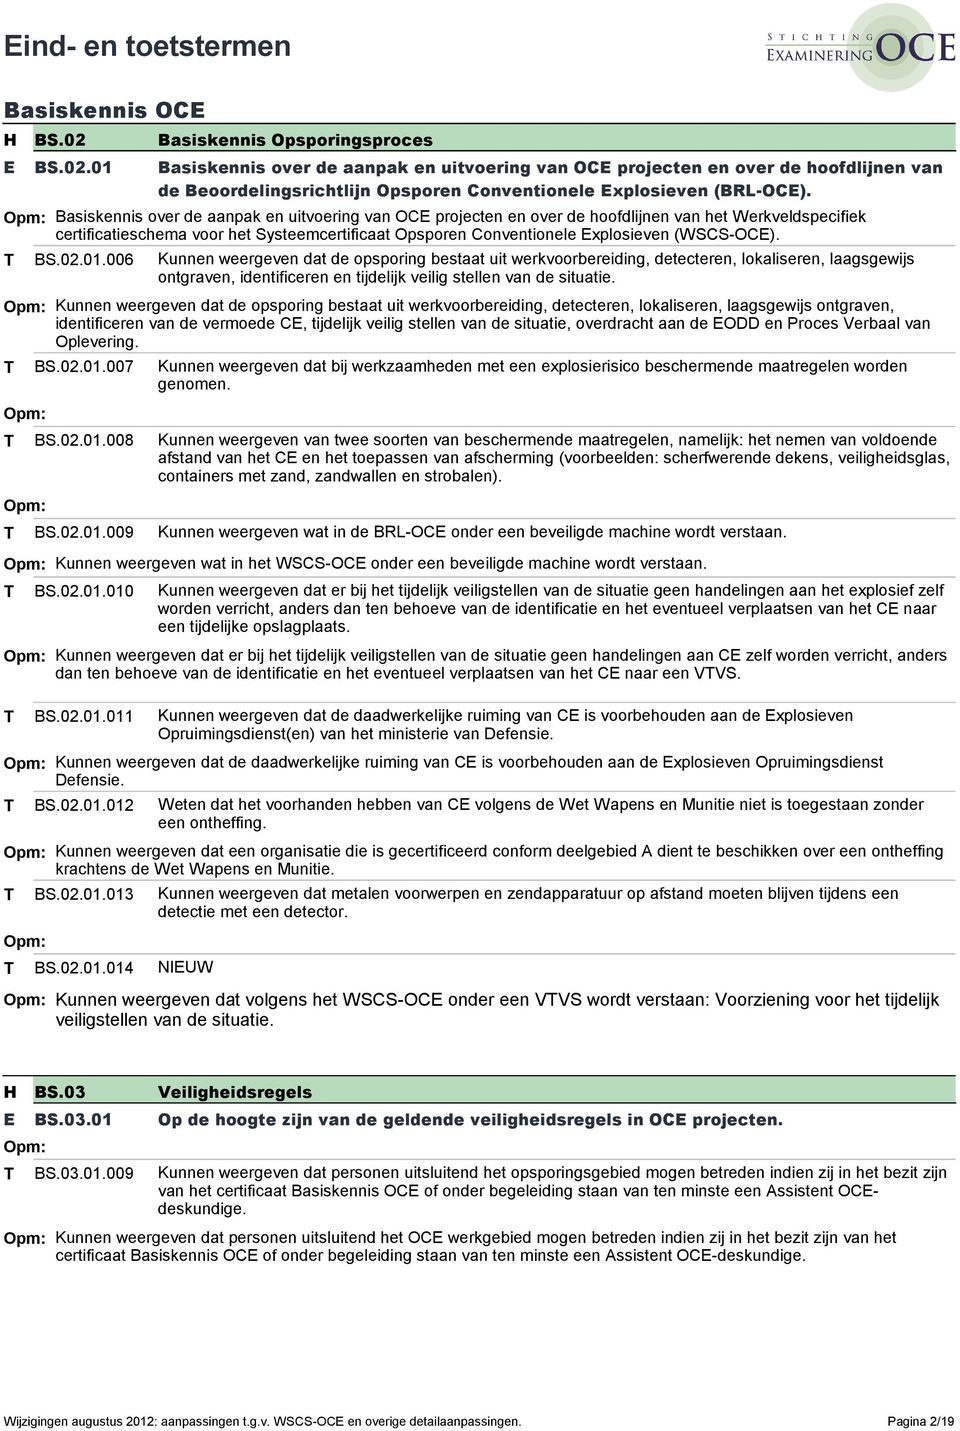 Basiskennis over de aanpak en uitvoering van OC projecten en over de hoofdlijnen van het Werkveldspecifiek certificatieschema voor het Systeemcertificaat Opsporen Conventionele xplosieven (WSCS-OC).